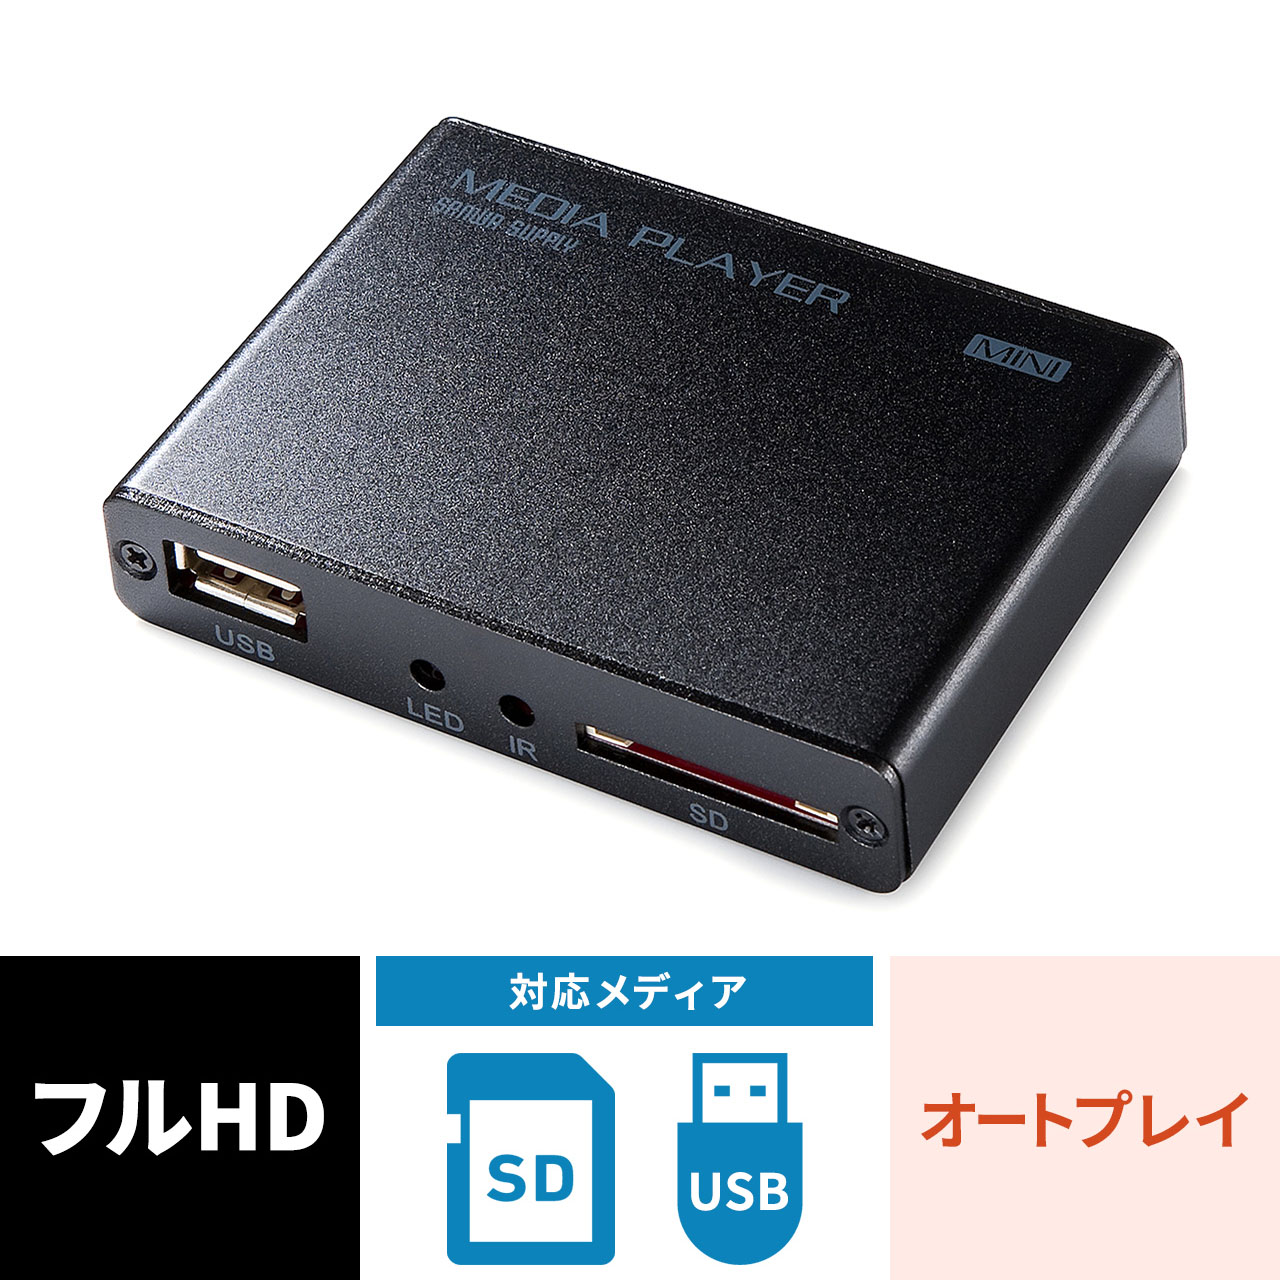 メディアプレーヤー デジタルサイネージ セットトップボックス HDMI MP4 FLV MOV MP3対応 USBメモリ SDカード 写真 動画  オートプレイ｜サンプル無料貸出対応 400-MEDI020H |サンワダイレクト